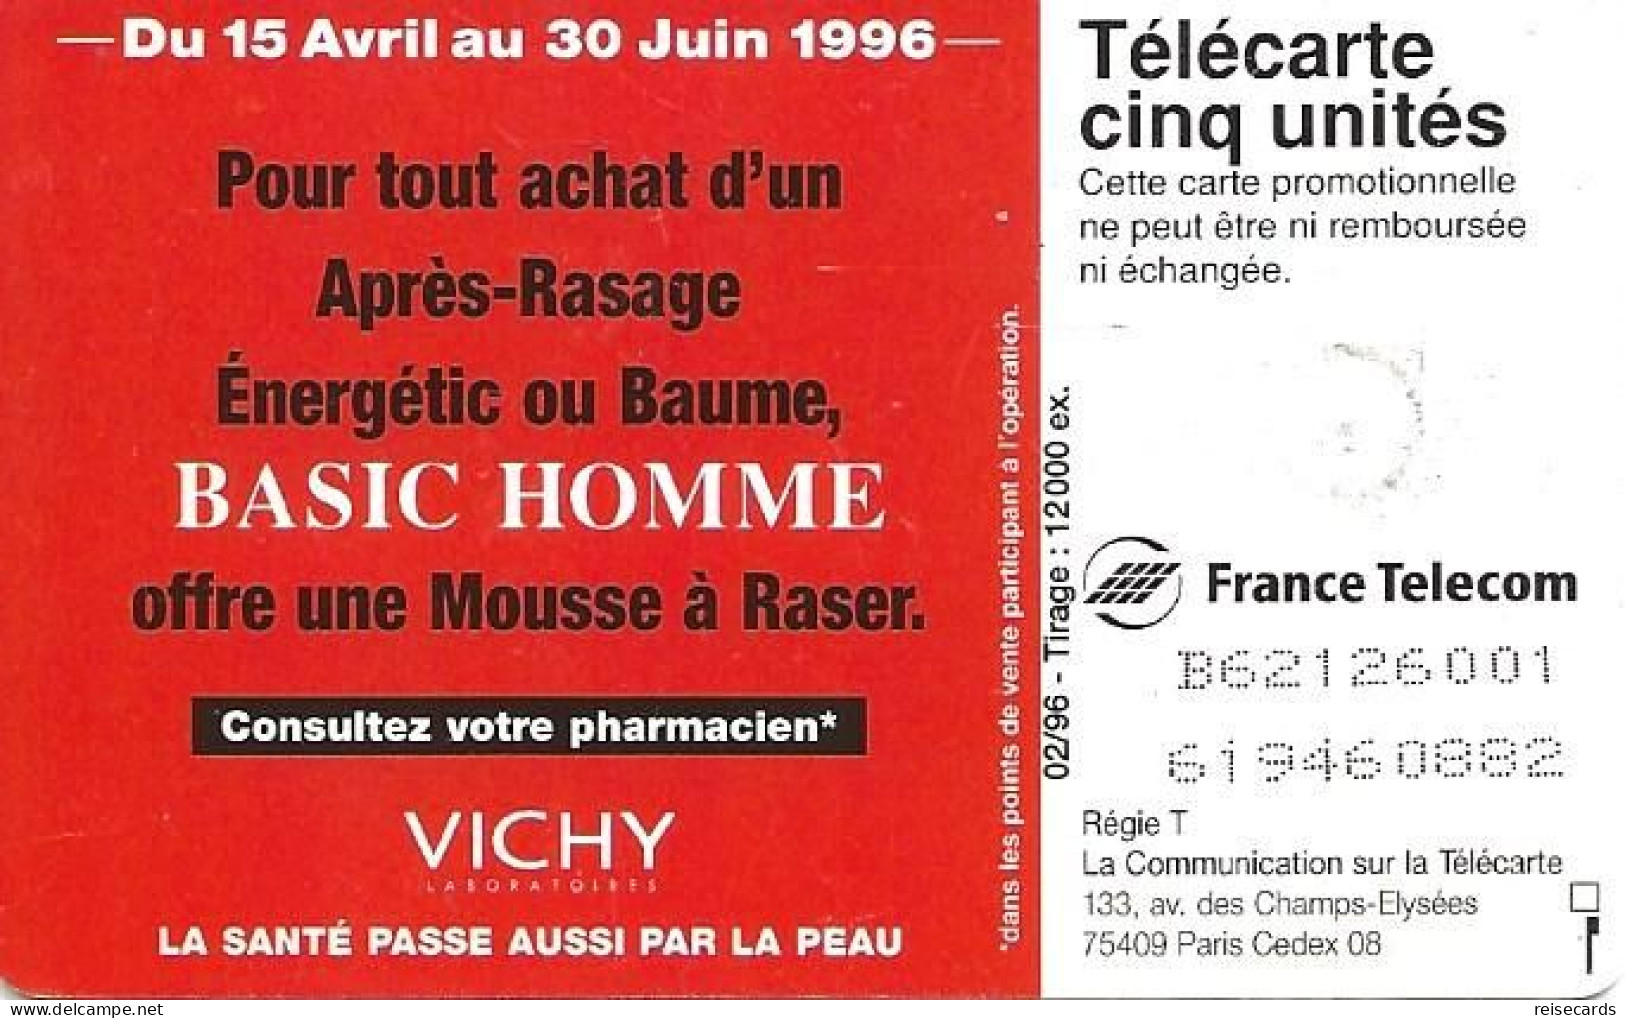 France: France Telecom 02/96 Gn 302 Vichy, Basic Homme - 1996